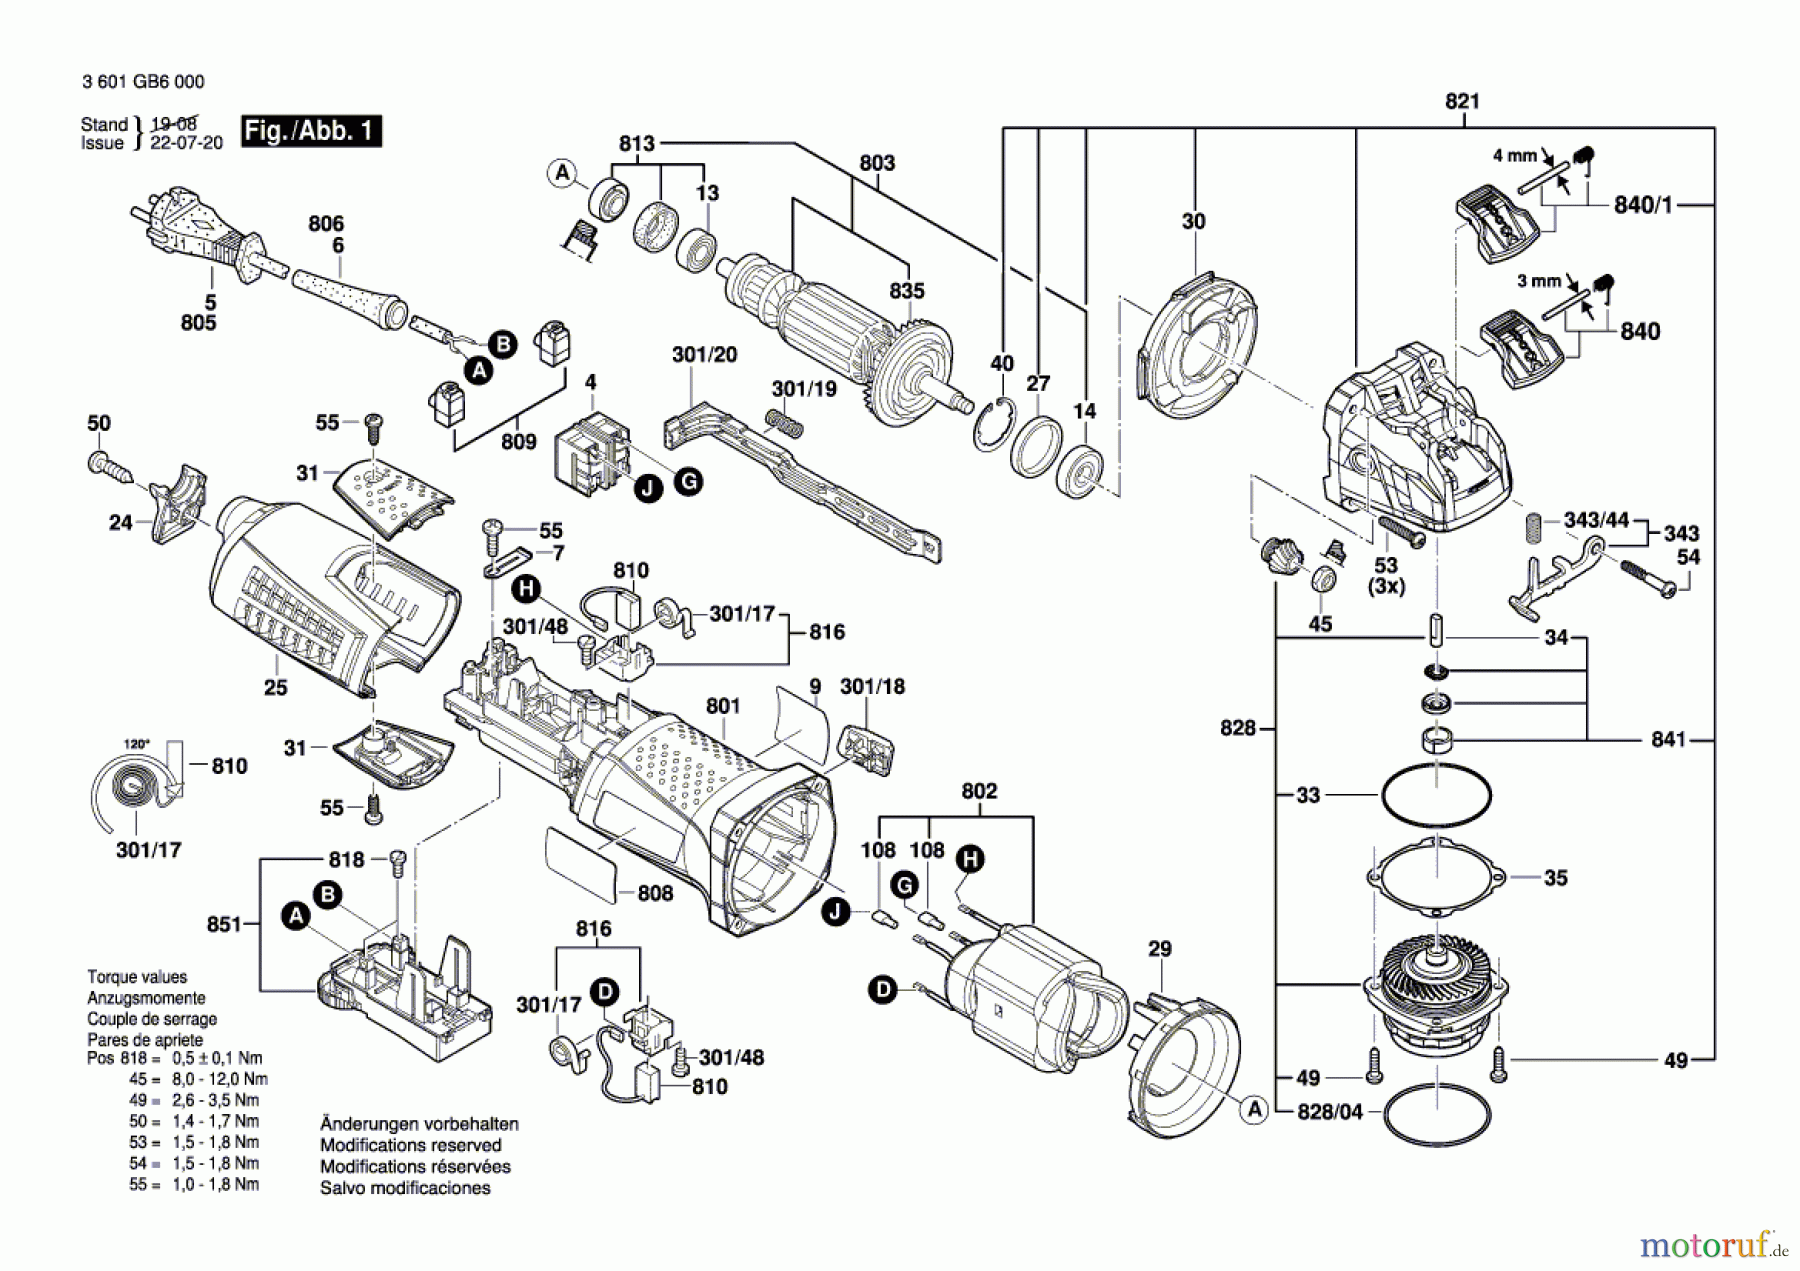  Bosch Werkzeug Winkelschleifer GWX 13-125 S Seite 1